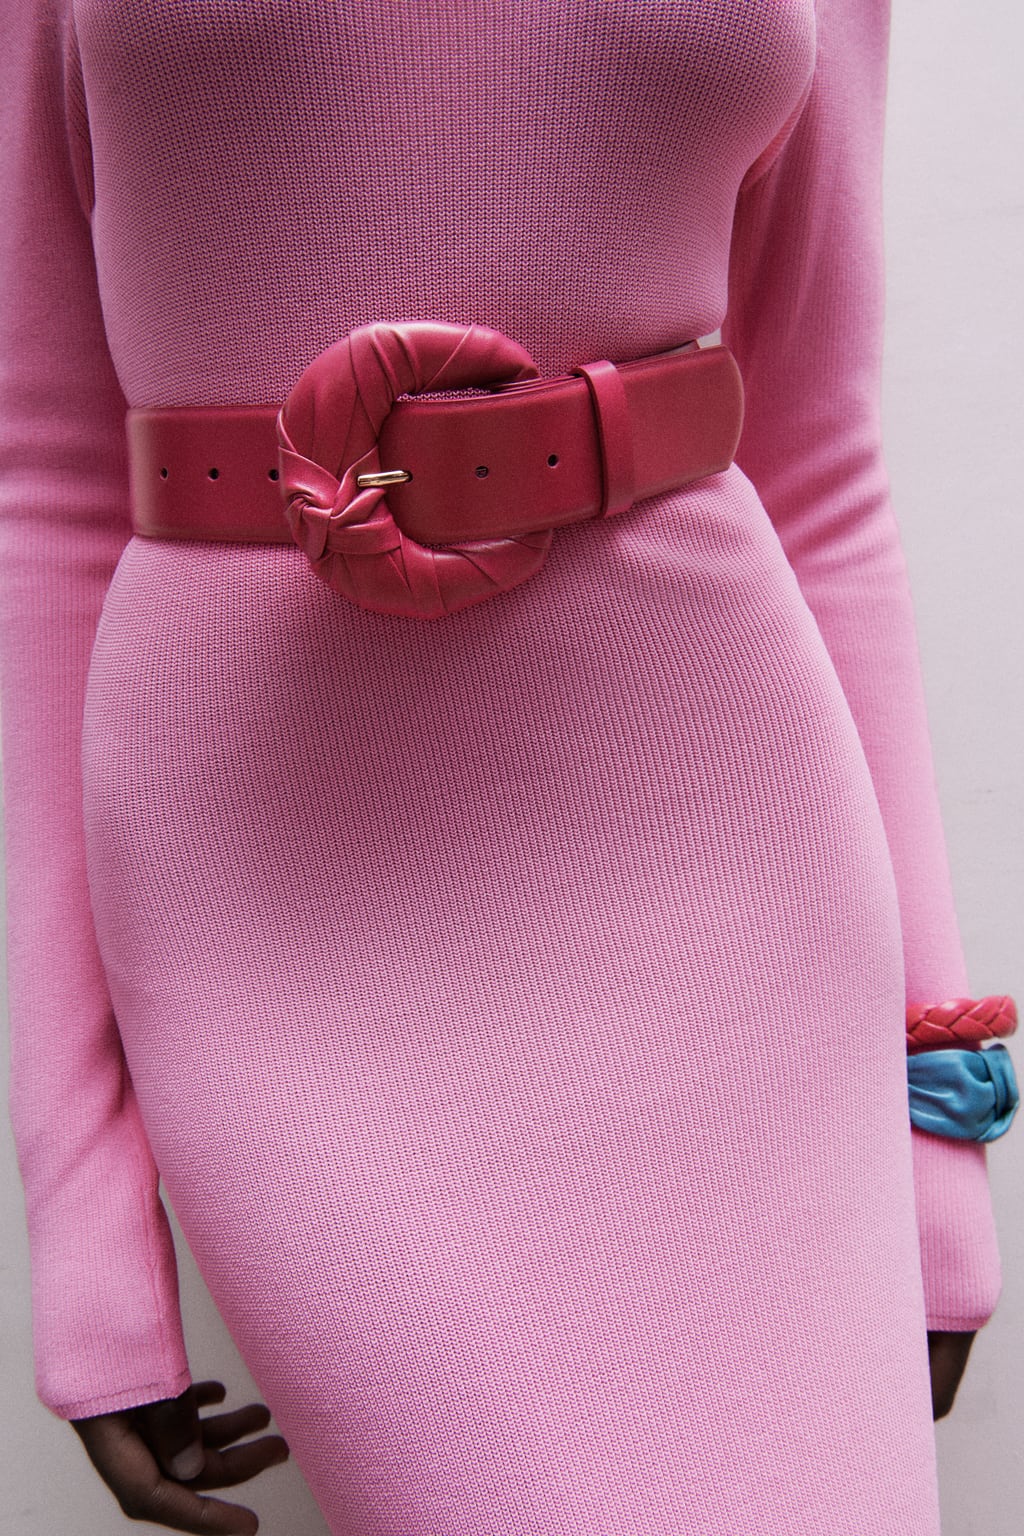 14 cinturones capaces de levantar cualquier look | Shopping | S Moda EL PAÍS